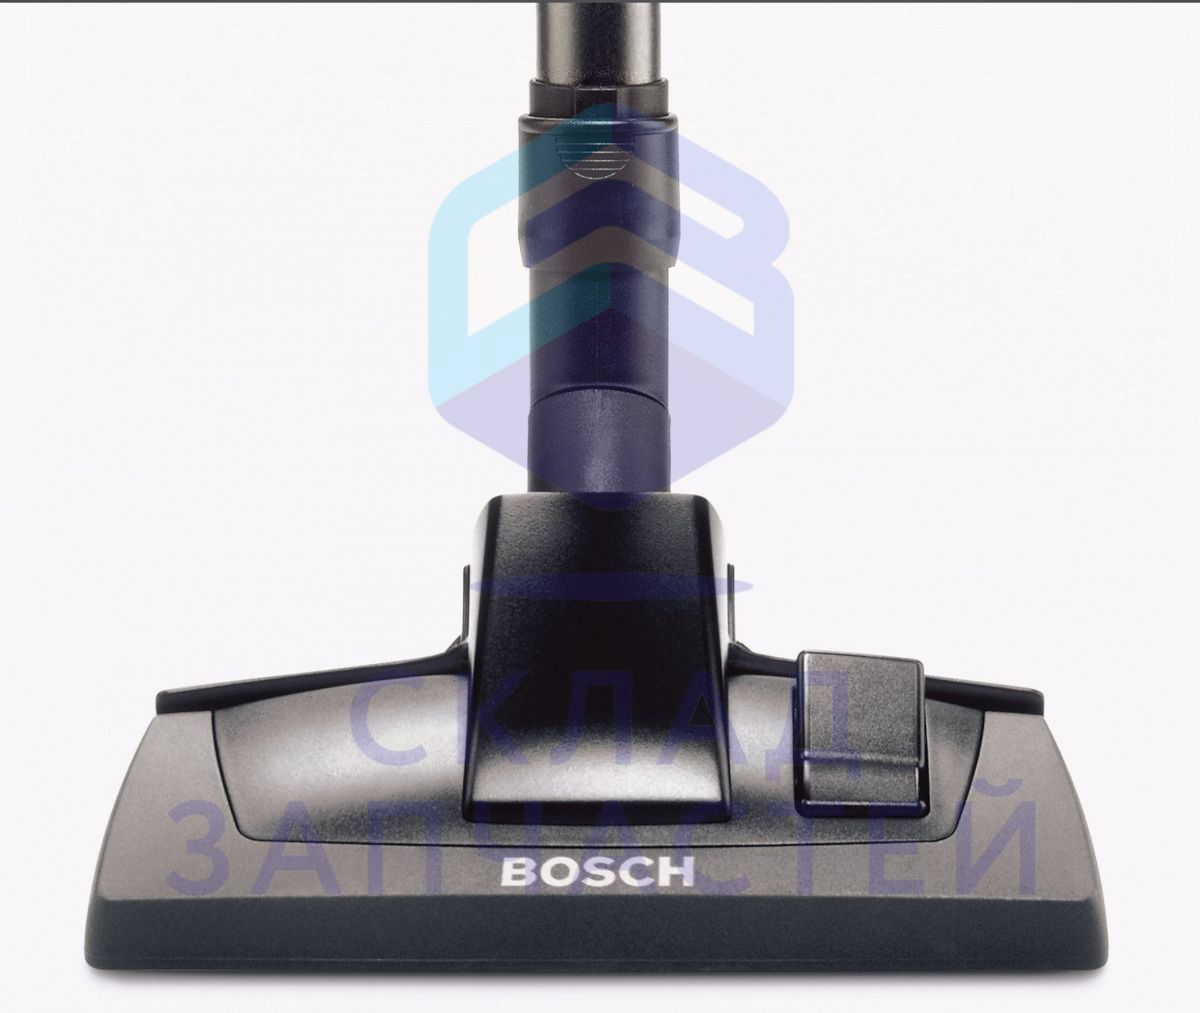 00461638 Bosch оригинал, щетка для пола